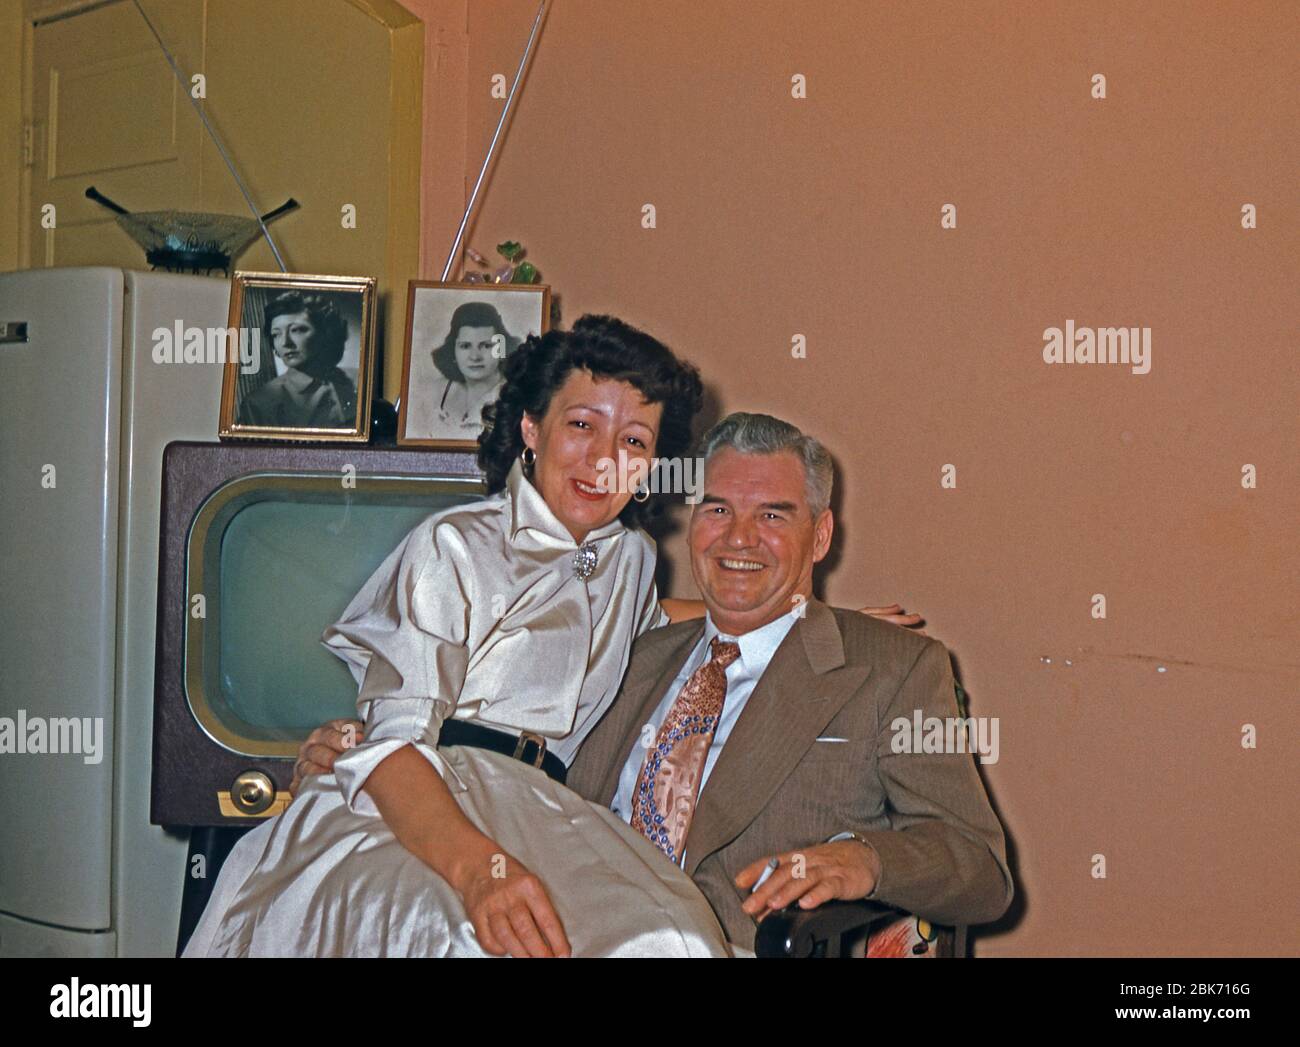 Ein älteres glückliches Paar in ihrer Heimat, USA, c 1955. Die Frau sitzt auf dem Knie des Mannes, während er eine Zigarette hält. Ein Fernseher und ein Kühlschrank befinden sich hinter ihnen in einem Raum, der in typischen Farben jener Zeit gestrichen wurde. Dieses Bild stammt von einem alten amerikanischen Amateur Kodak Farbtransparenz. Stockfoto